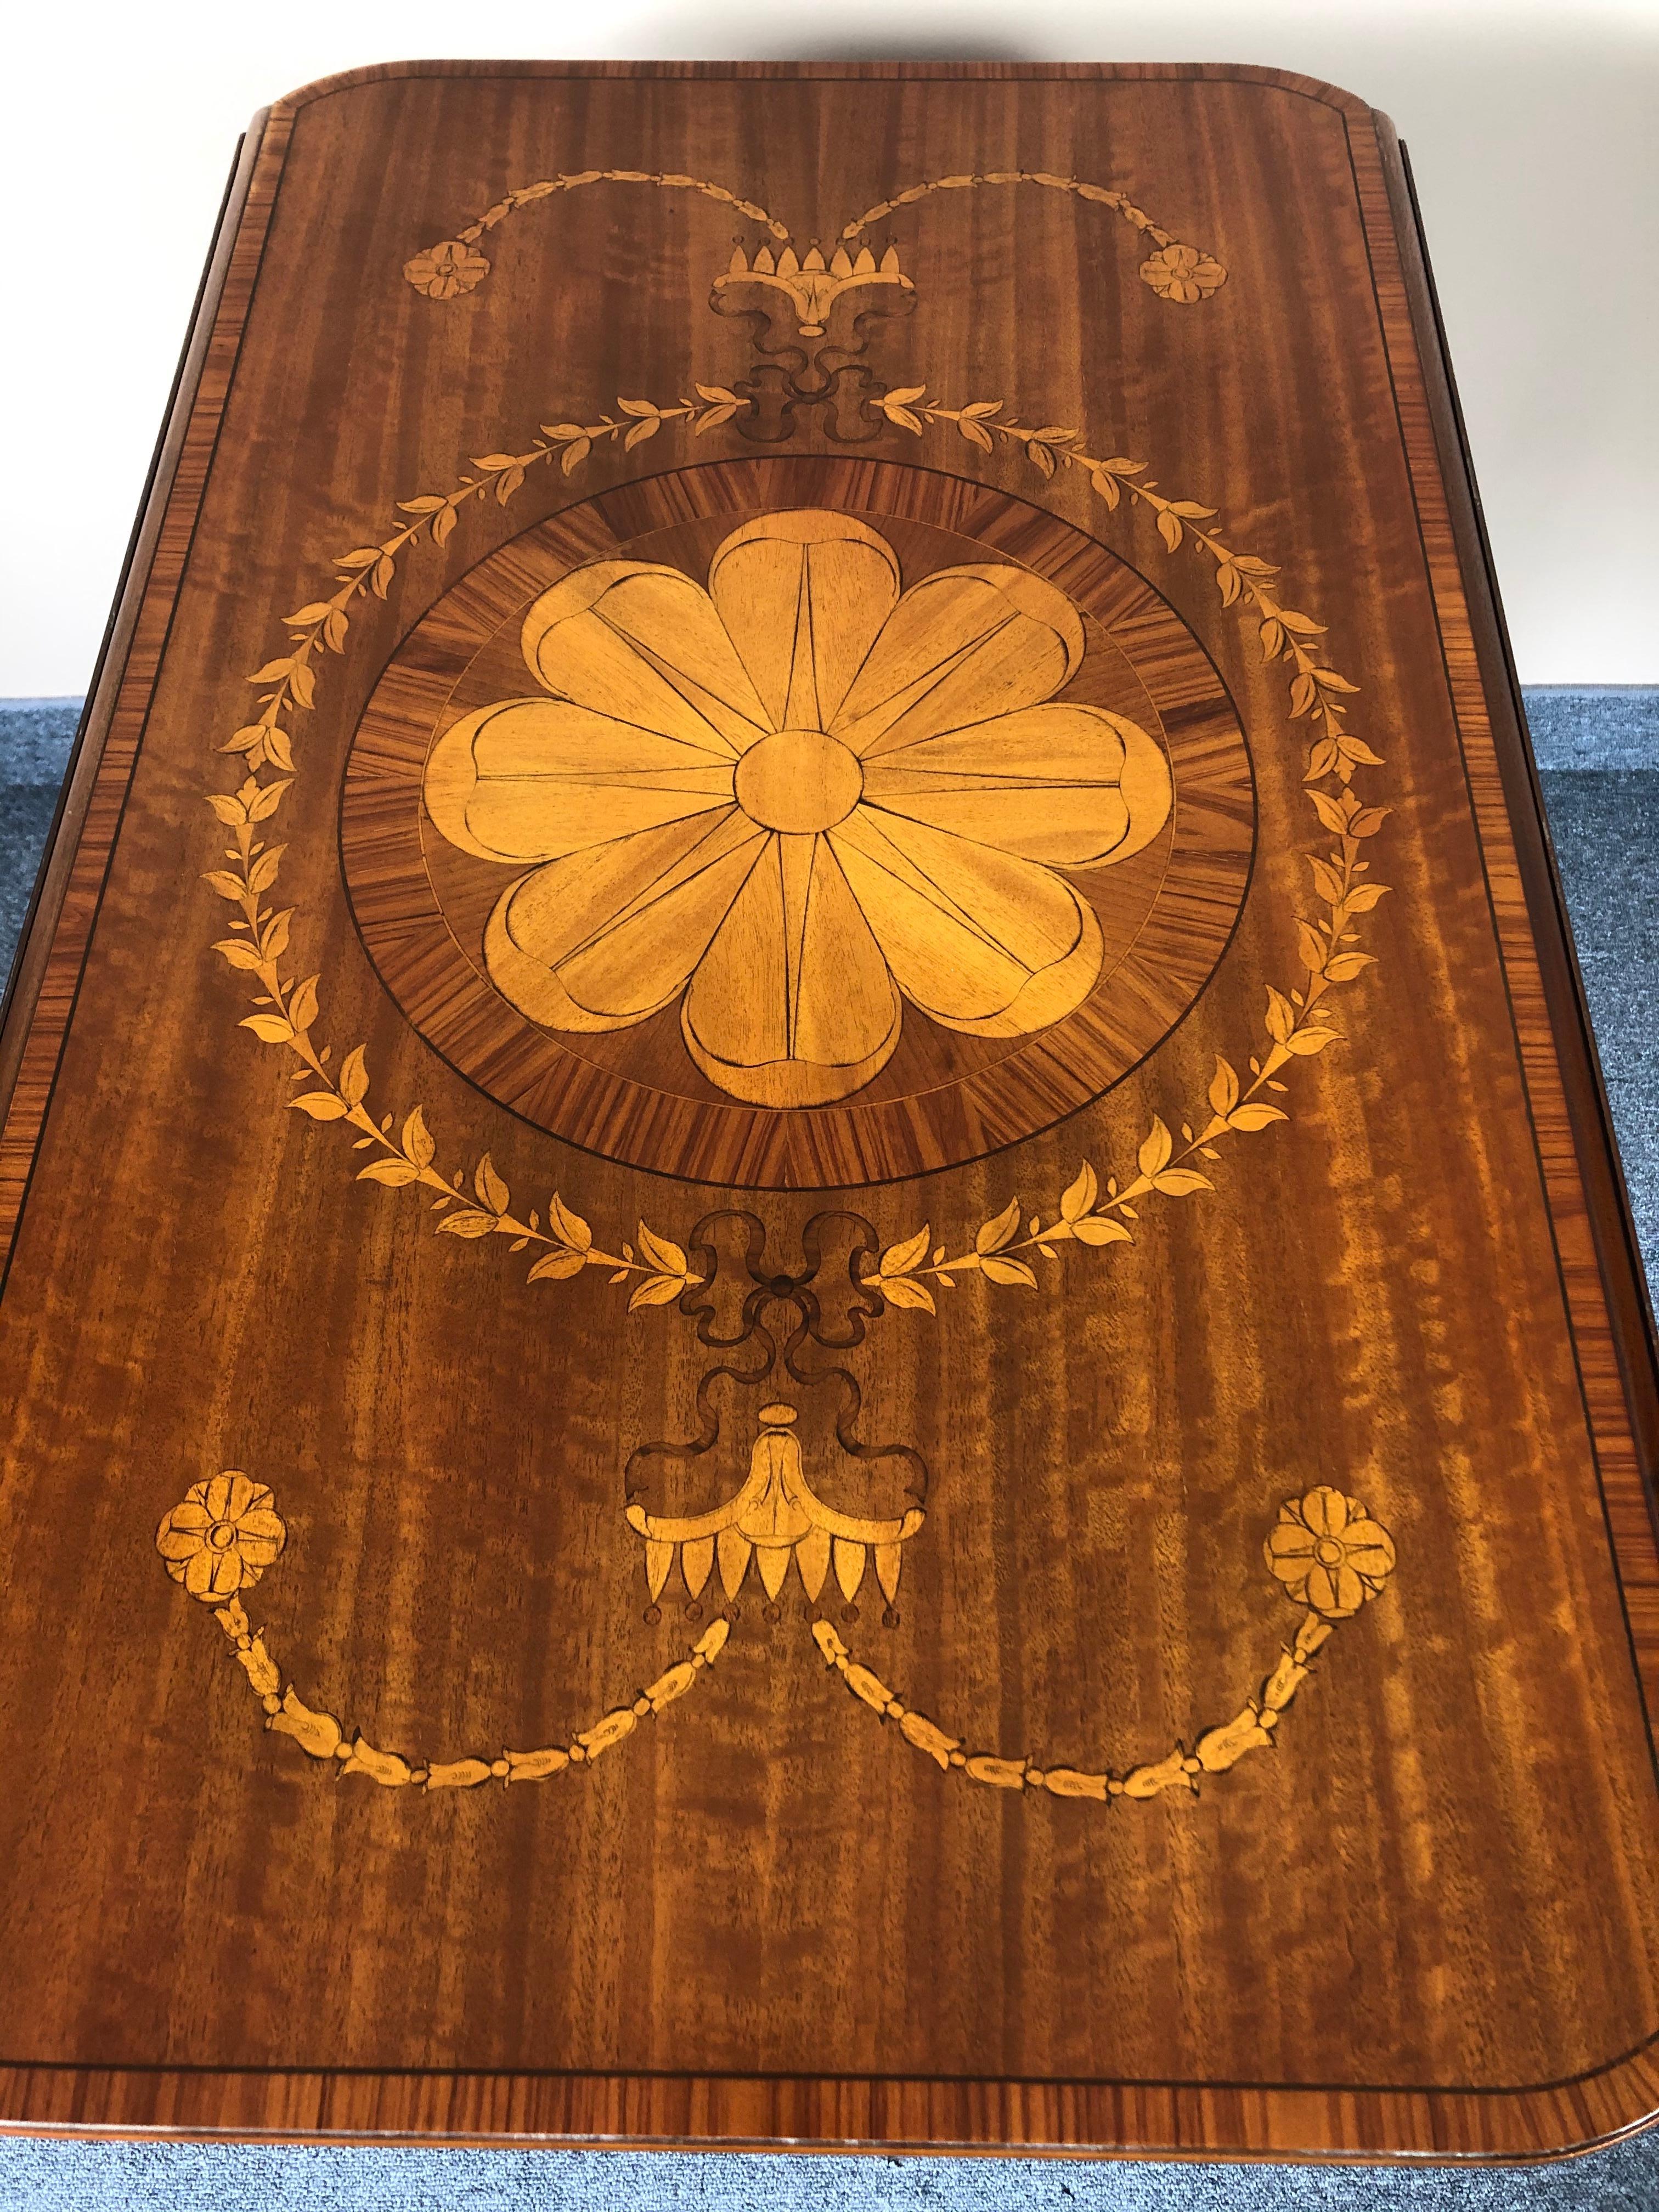 Ein schöner Dropleaf- oder Pembroke-Tisch mit gemischten Holzintarsien, darunter ein zentrales Blumenmandala, eine einzelne Schublade und hübsche verjüngte Beine, die ebenfalls mit Intarsien verziert sind.
Wenn geöffnet 37,25 W